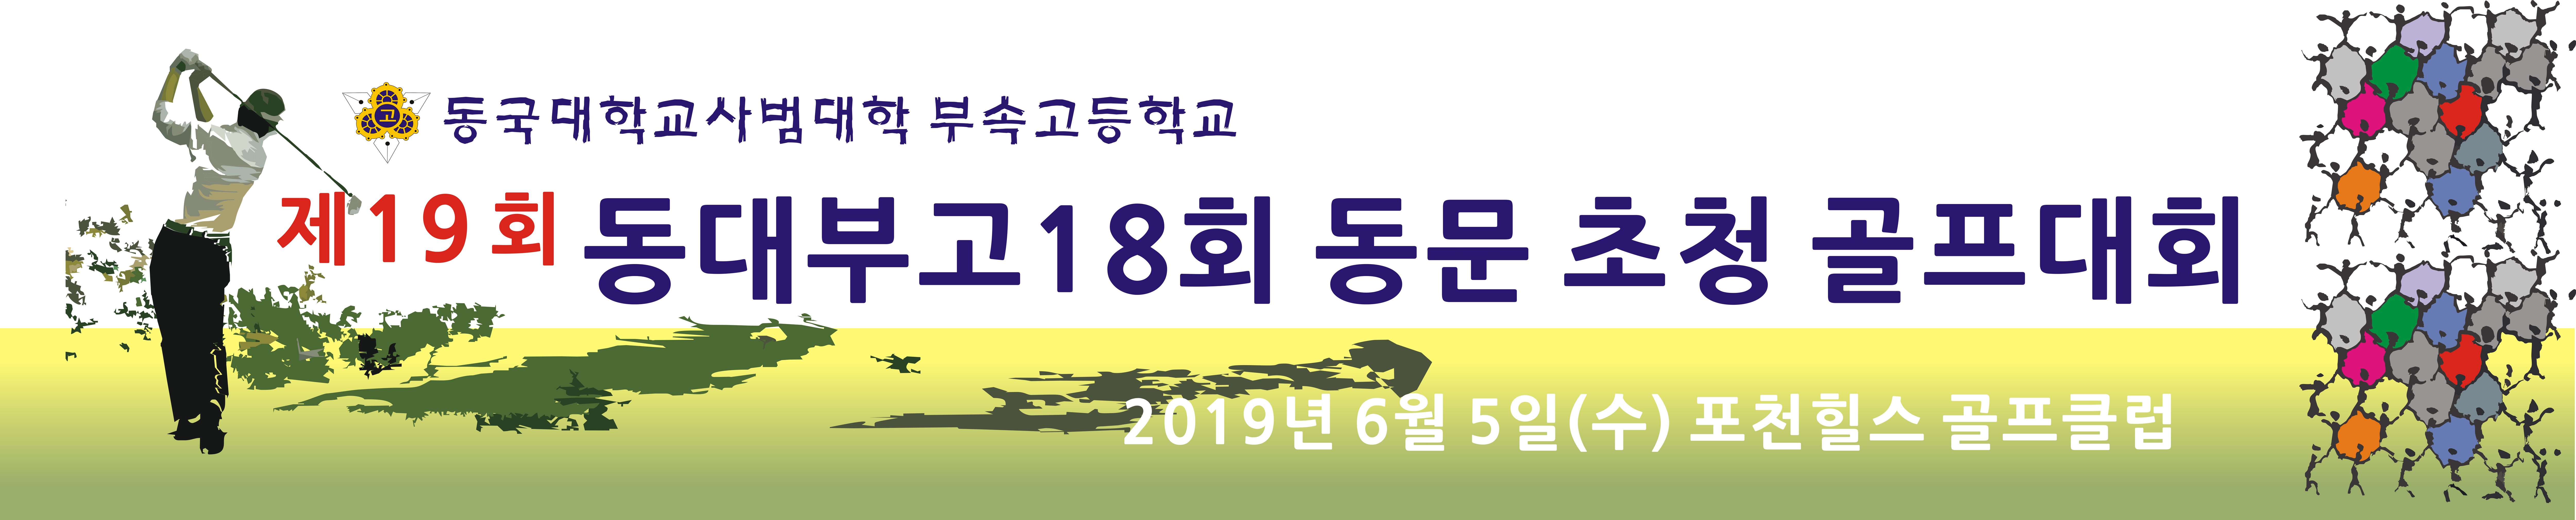 2019_6동문초청골프대회현수막.jpg